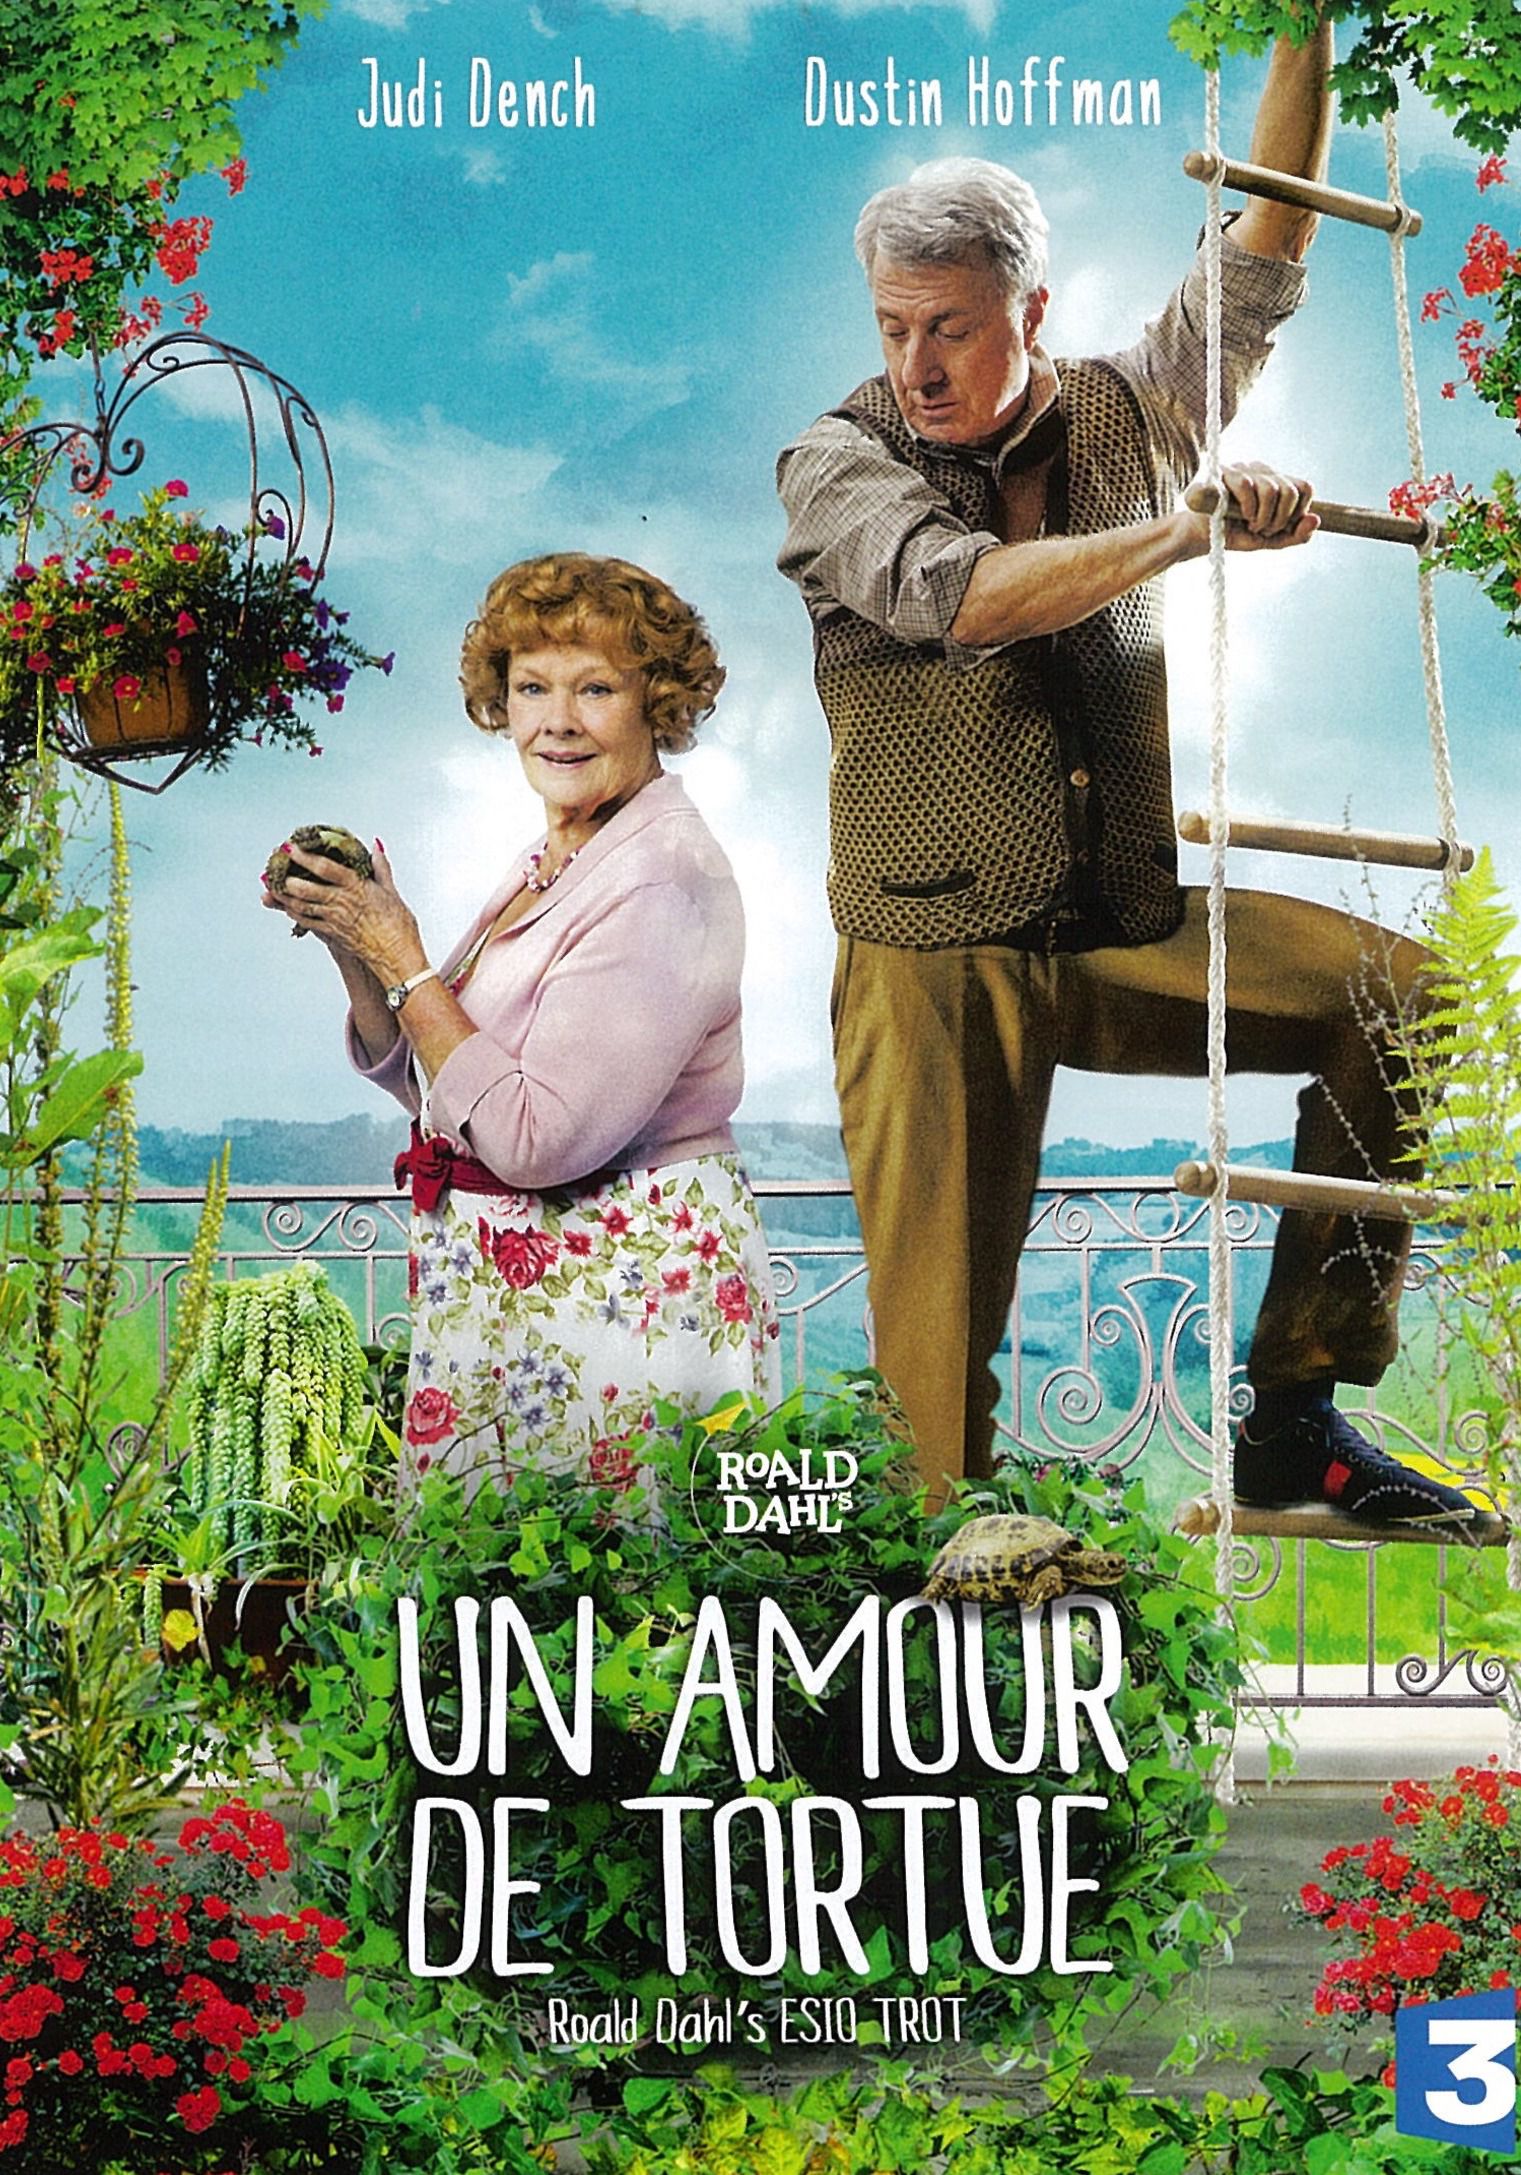 Un amour de tortue - Film (2014) streaming VF gratuit complet